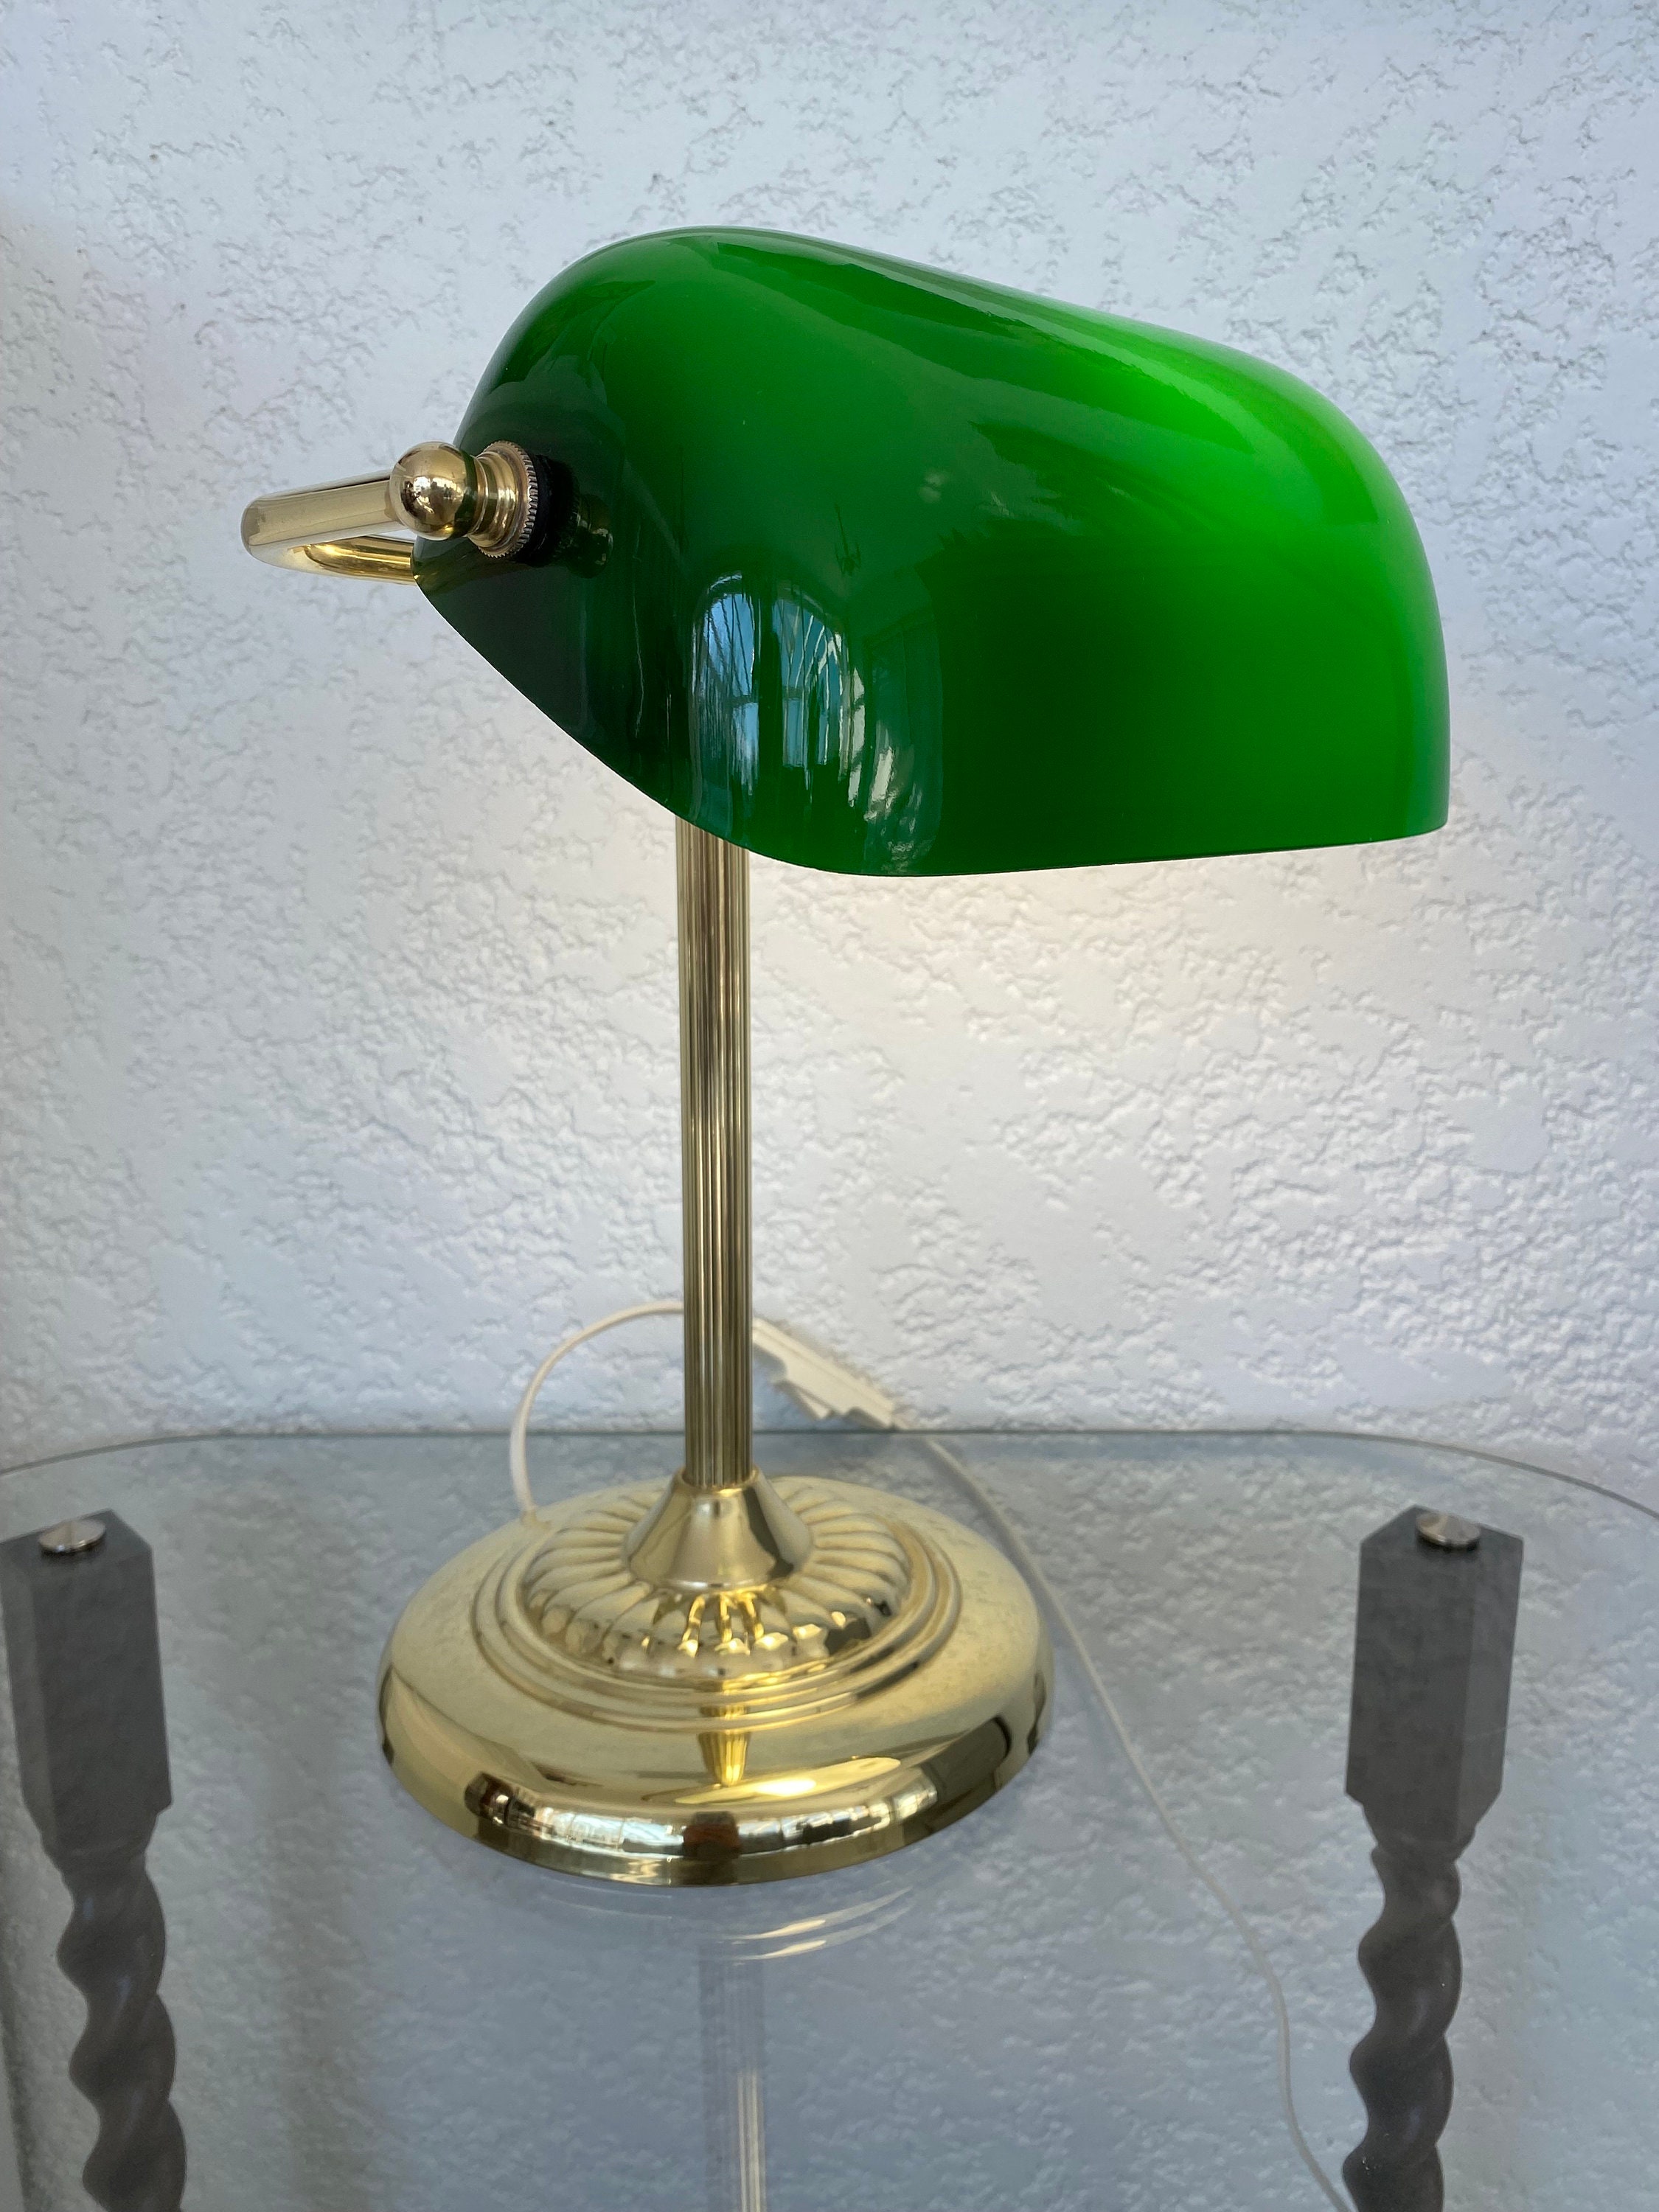 Lampe Verte Bank - Lampe Bureau Vintage - Lampe Chevet Rétro